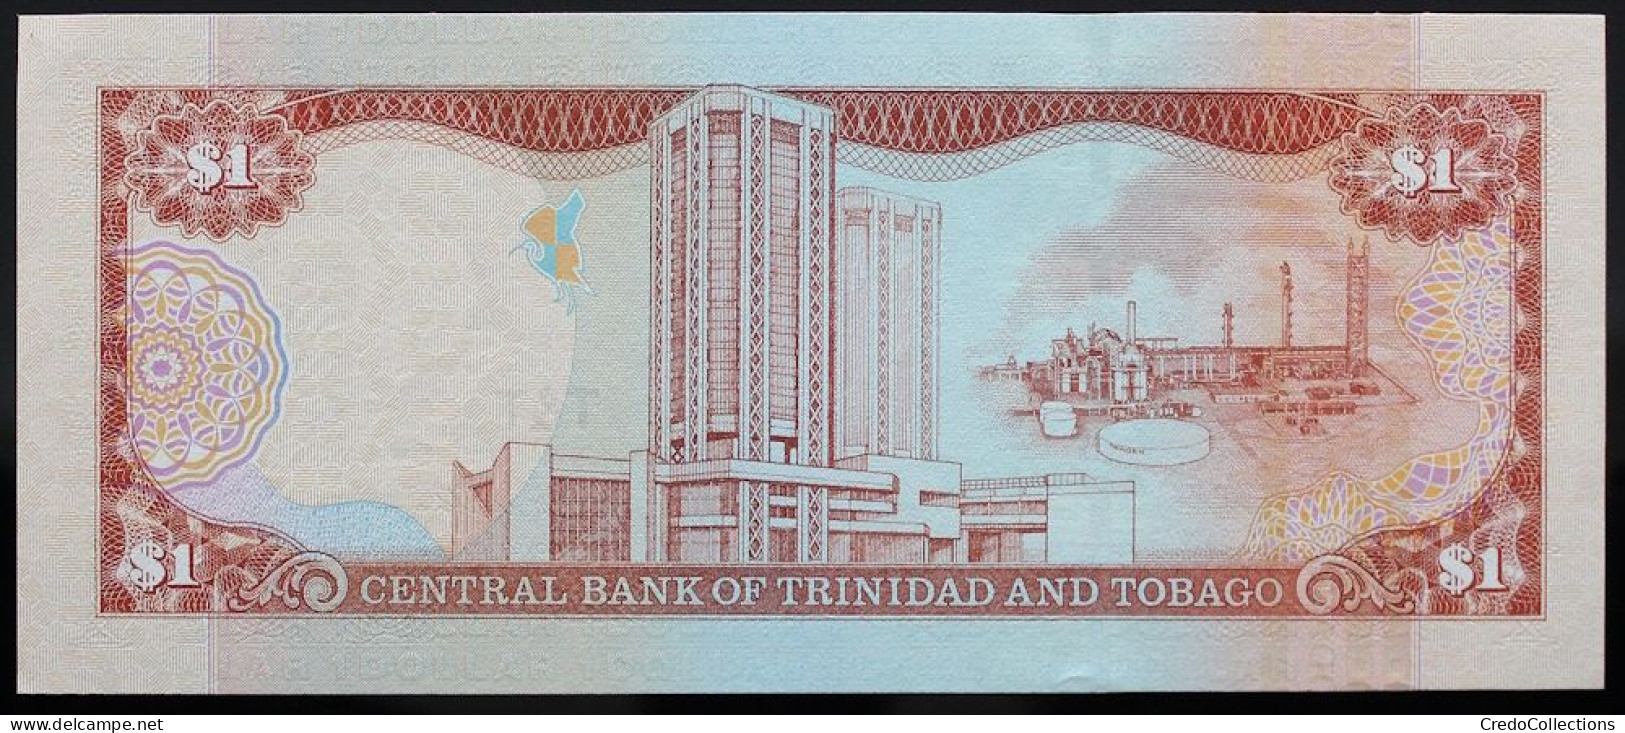 Trinitad Et Tobago - 1 Dollar - 2002 - PICK 41 - NEUF - Trinidad En Tobago